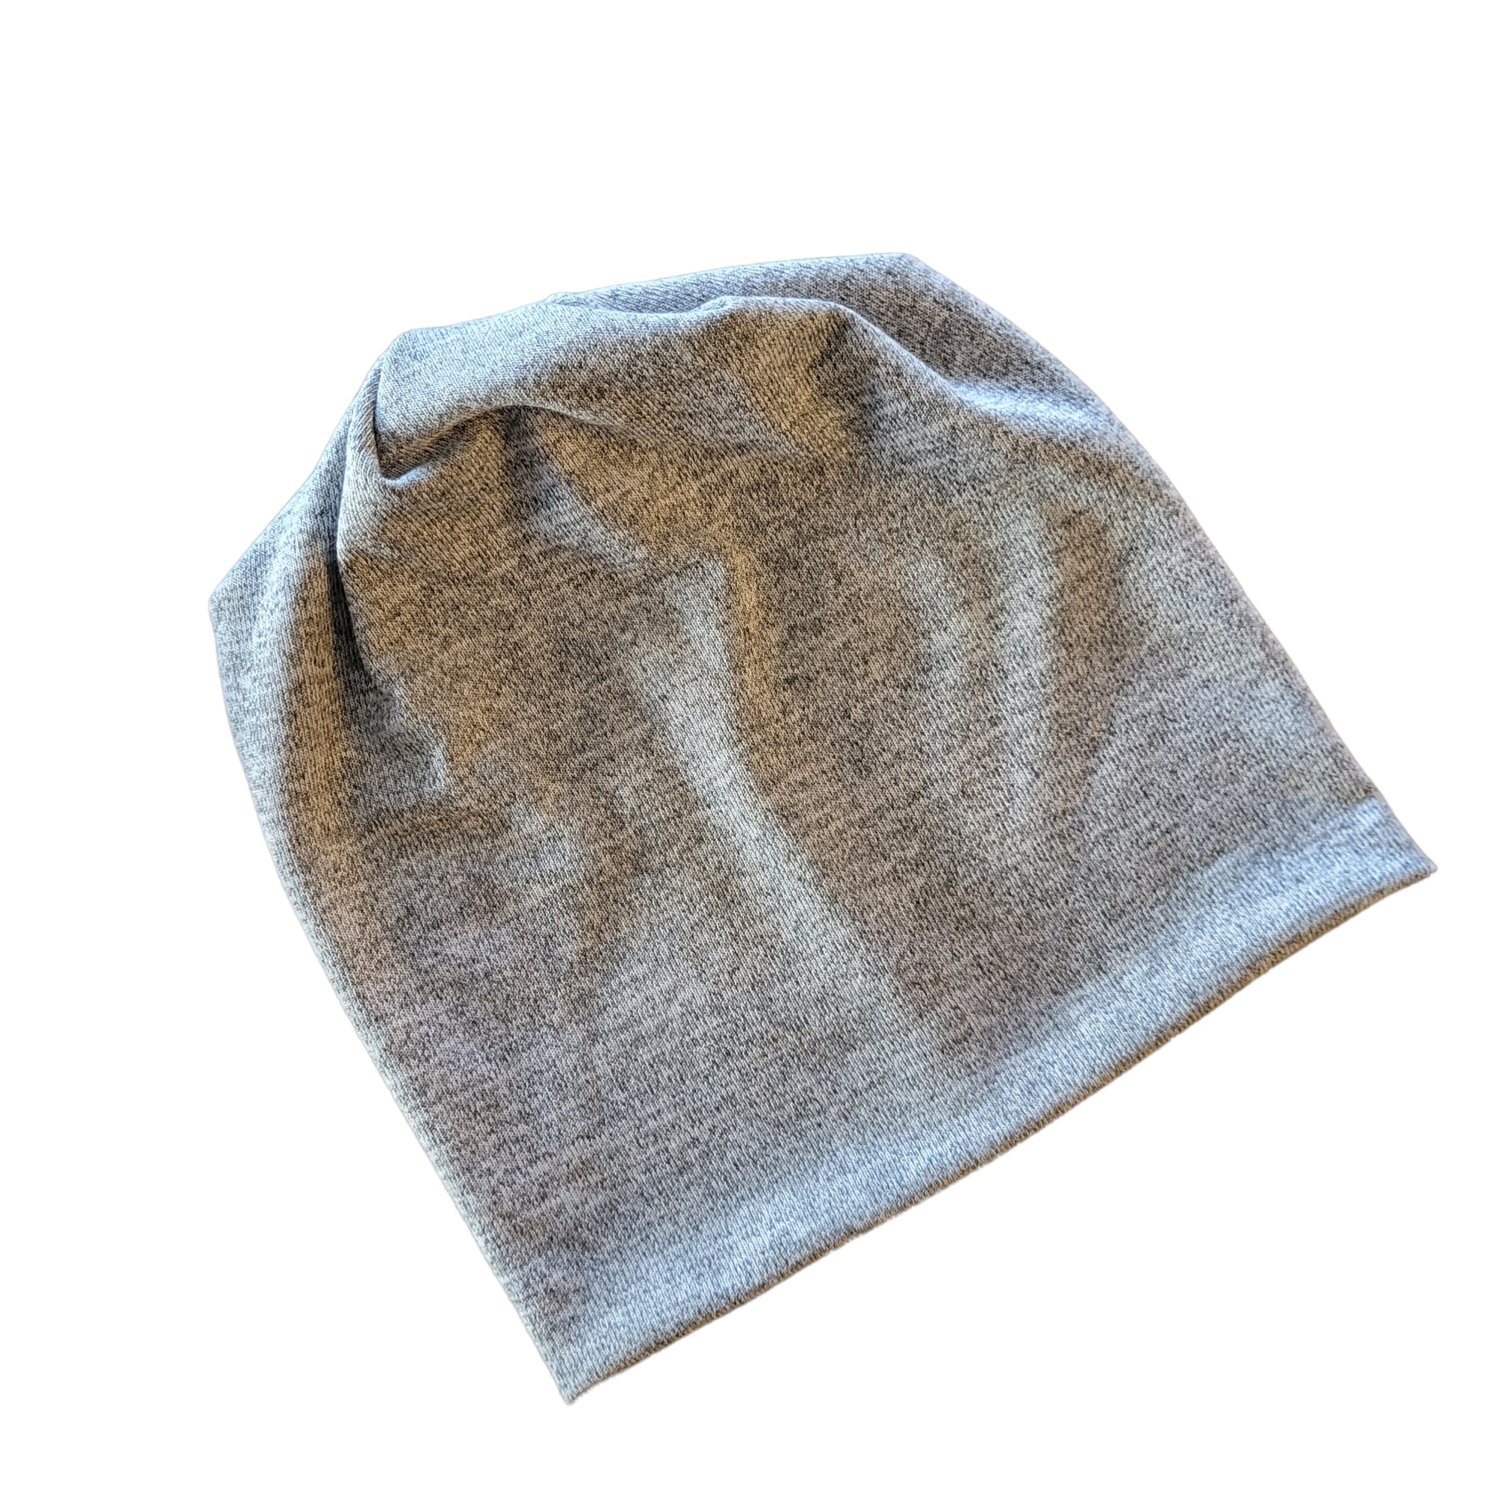 Dressy knit beanie - silvery gray